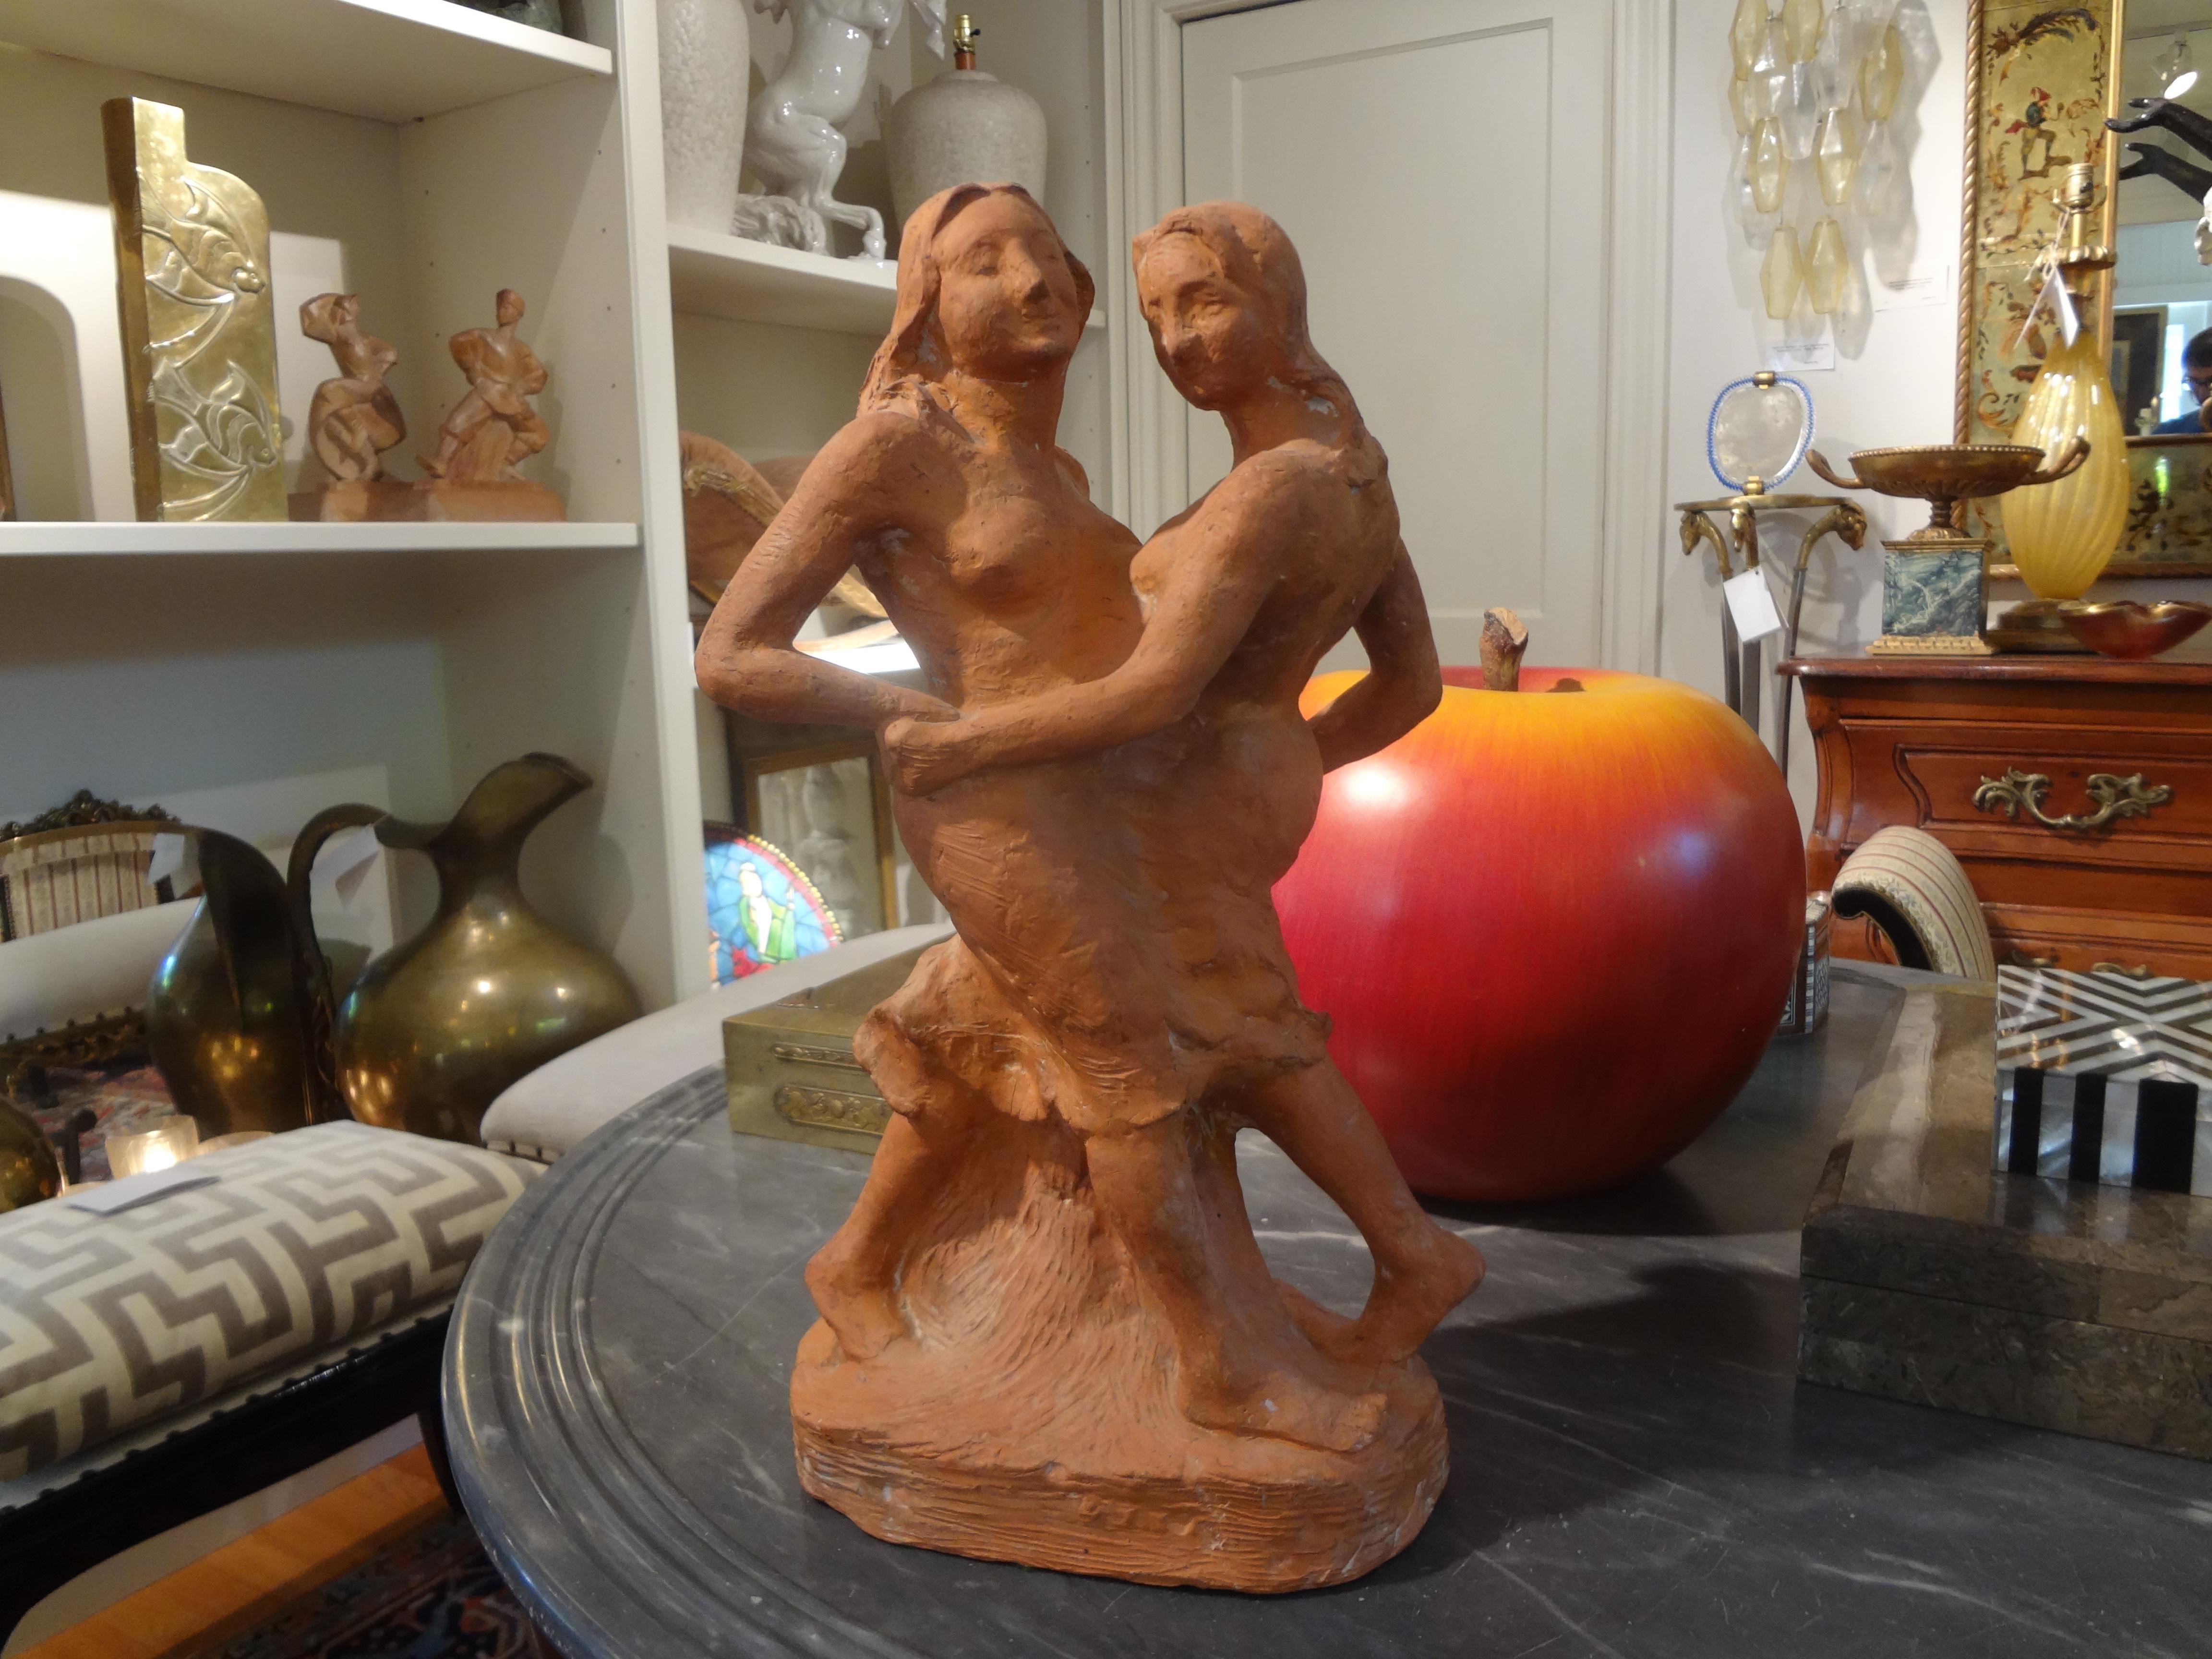 Sculpture française en terre cuite bien exécutée signée T. Foris (1921). Cette jolie sculpture figurative française représente deux jeunes filles dansantes stylisées.